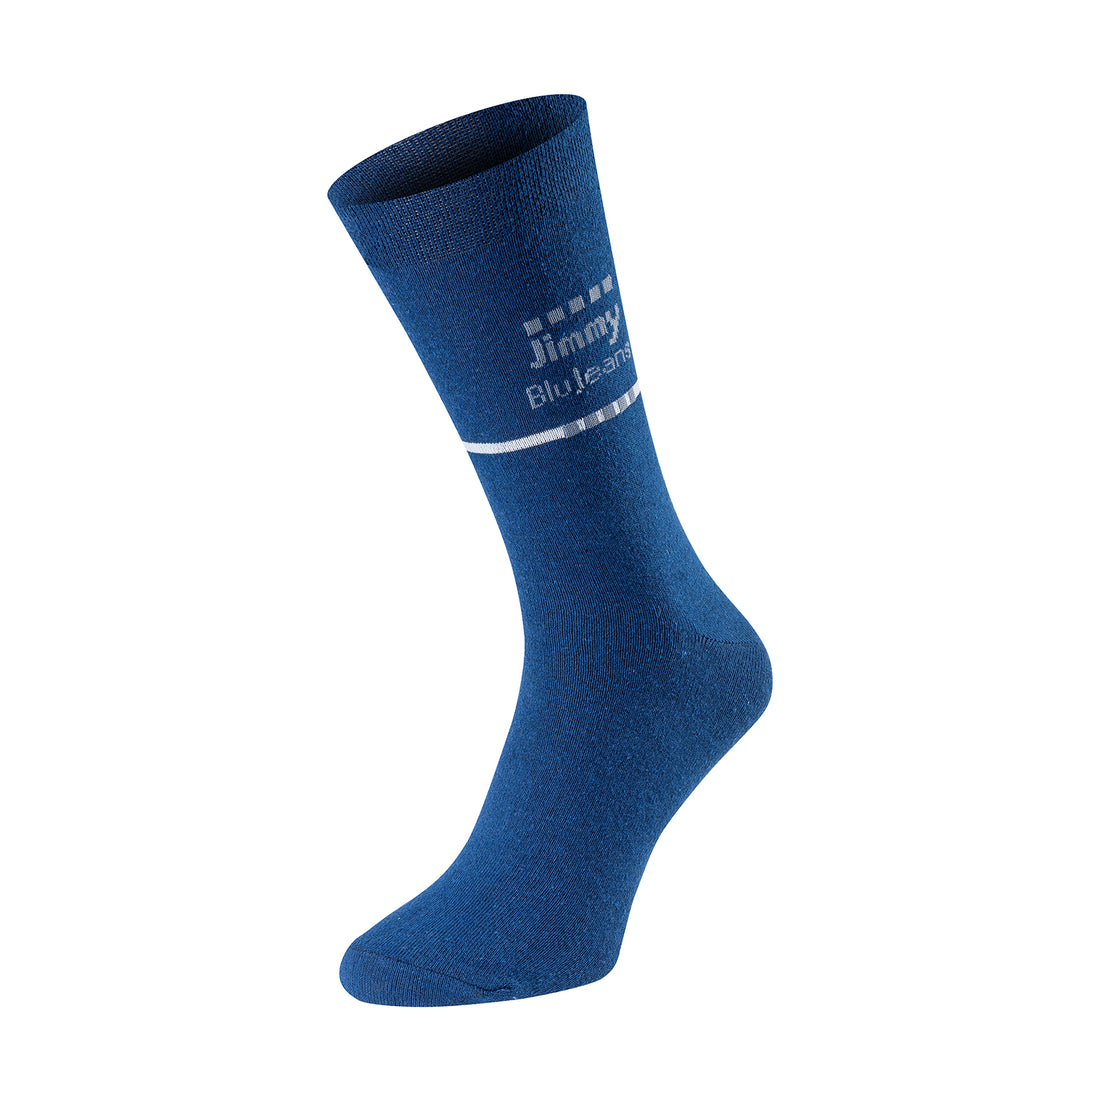 ChiliLifestyle Jimmy BluJeans Socken, 4 Paar, für Damen und Herren